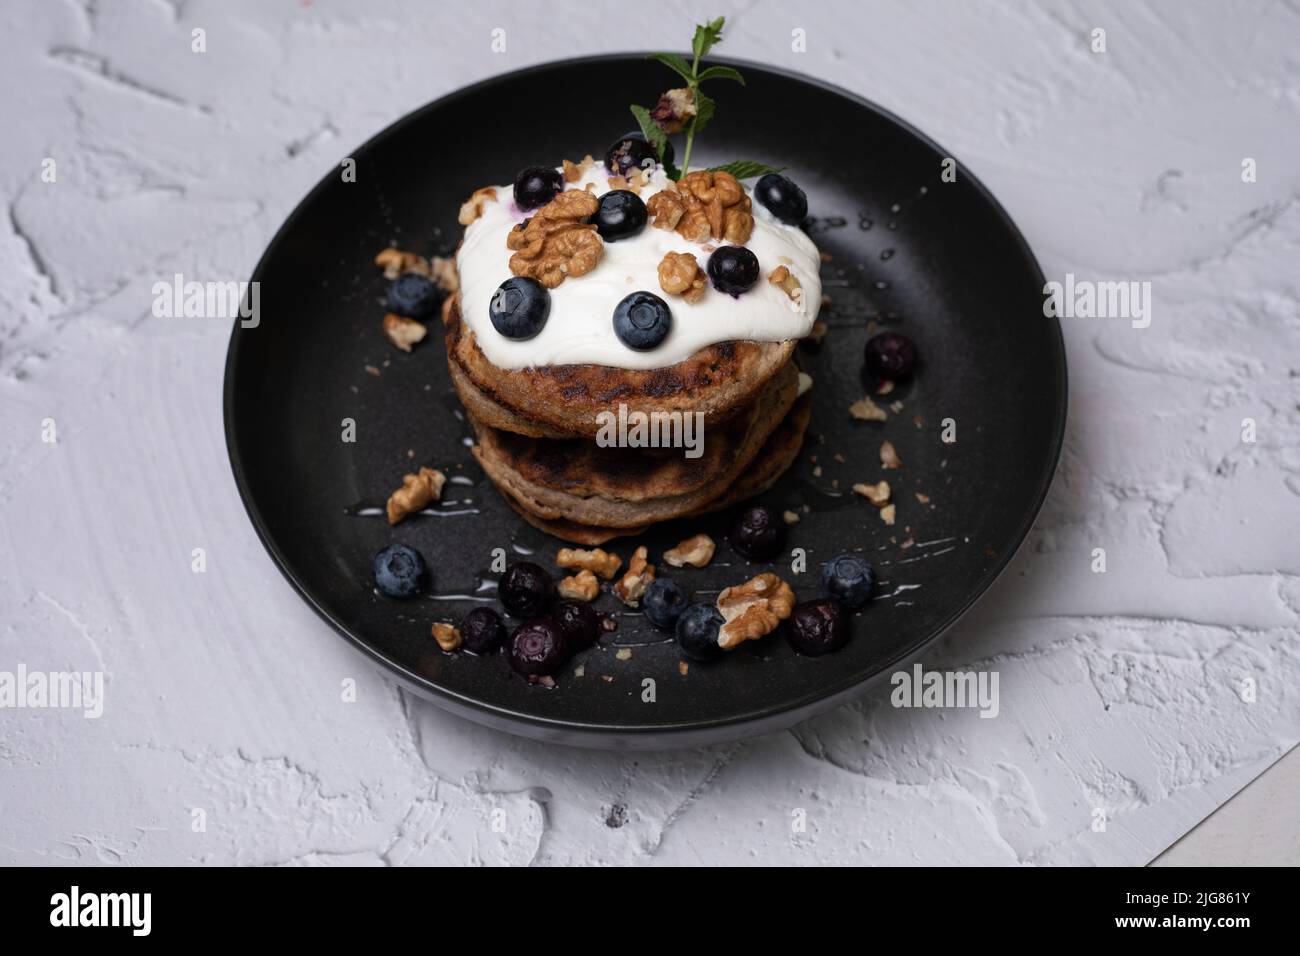 Colazione perfetta, pancake americani accatastati serviti su un tavolo di pietra nera. Deliziose frittelle americane impilate con mirtillo, da vicino, vista dall'alto. Foto Stock